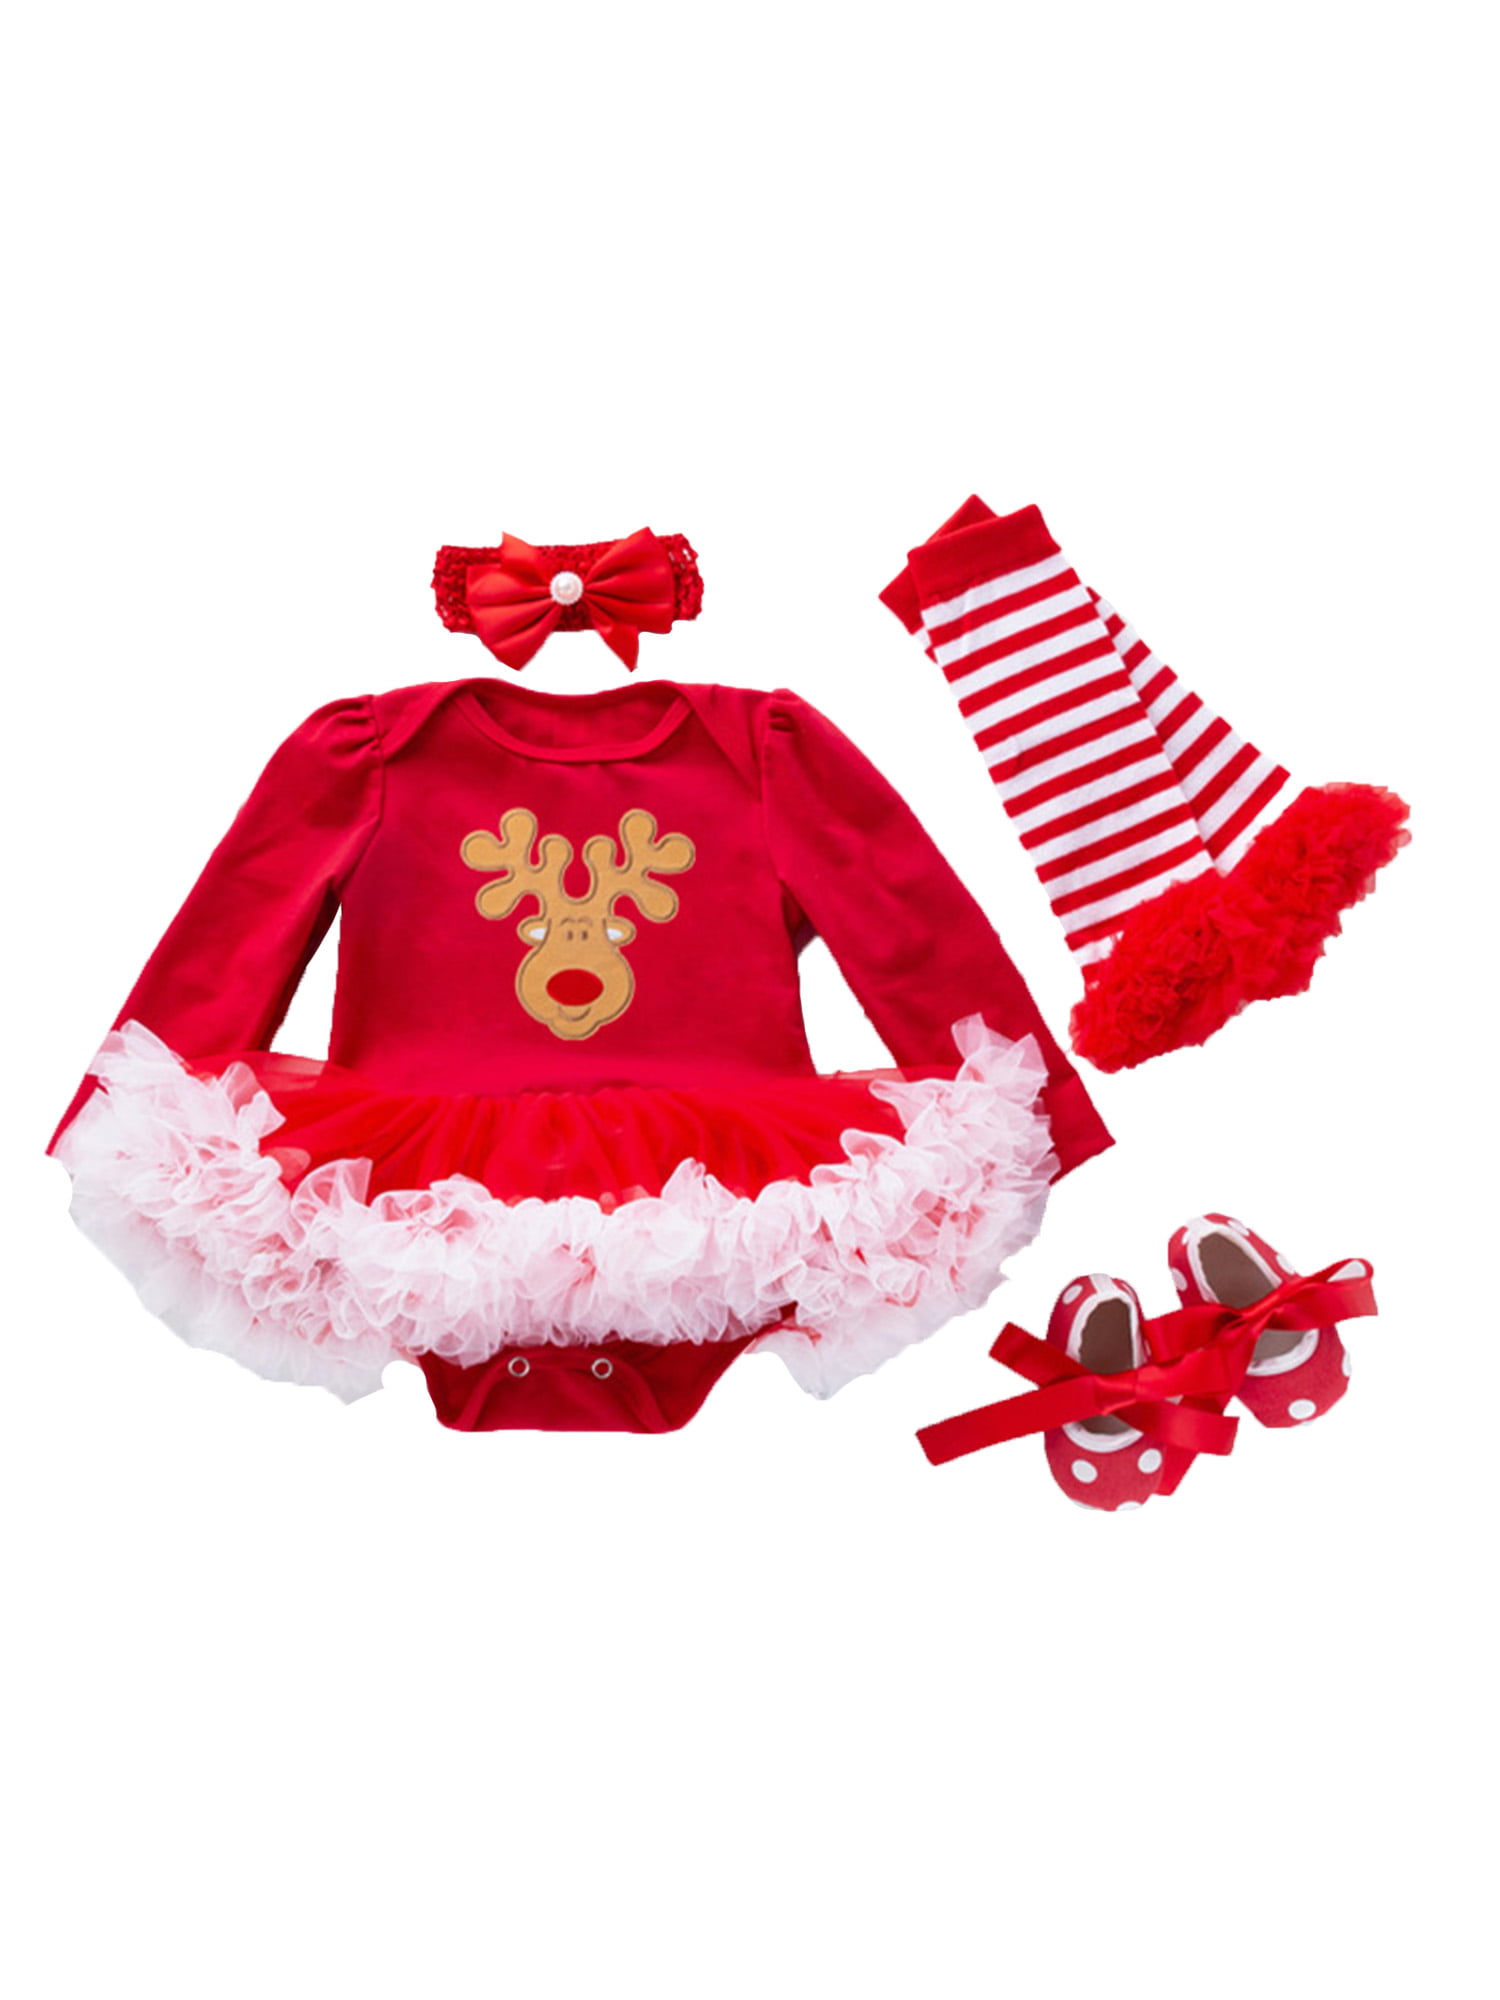 Christmas Girl Outfits,Fineser Toddler Newborn Baby Girls Christmas Deer Dot Tutu Princess Dress+Headbands Outfits 2Pcs Set 